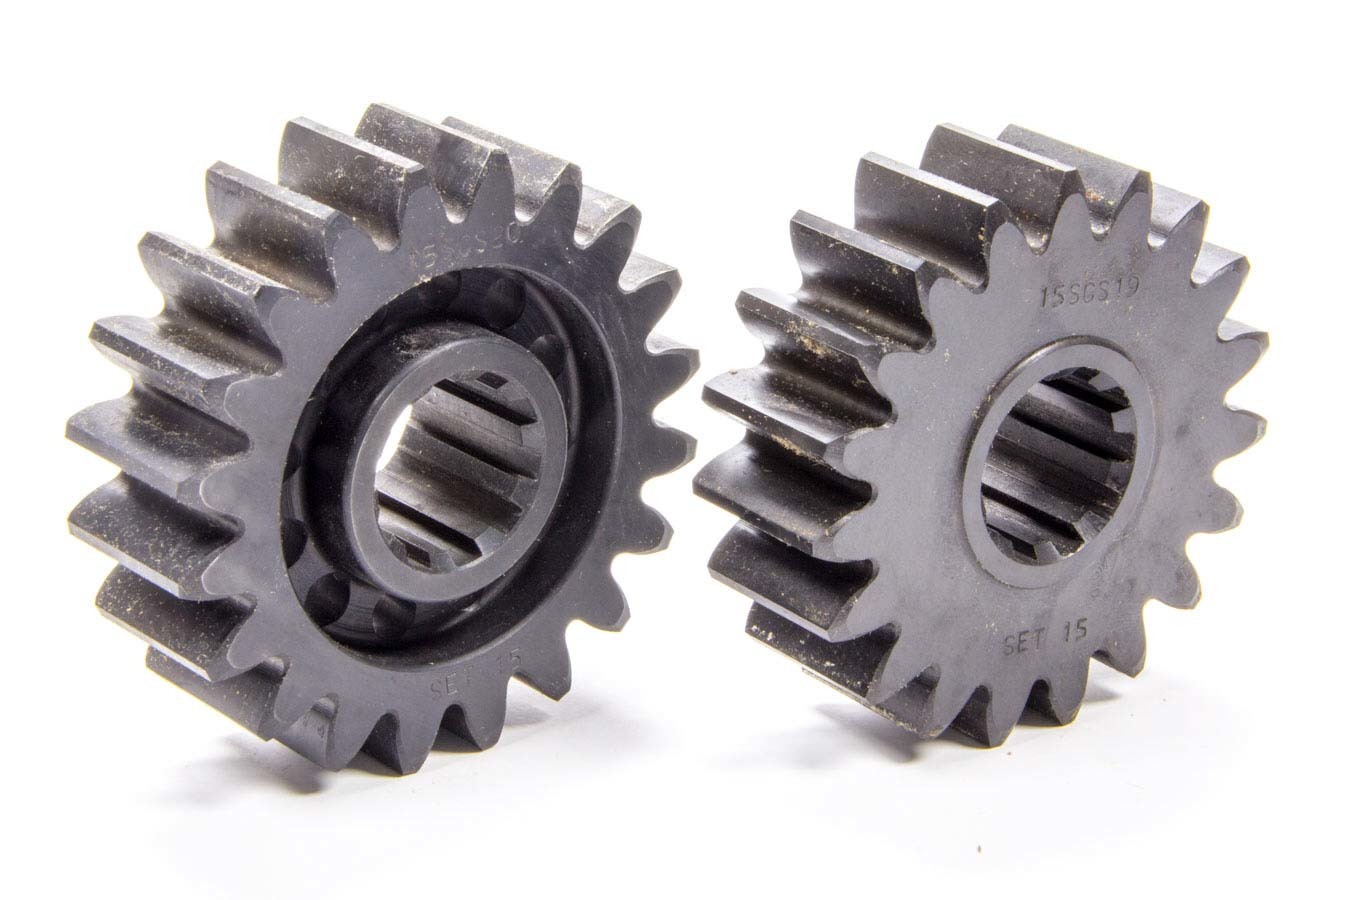 SCS Gears 15 Quick Change Gear Set, Professional, Set 15, 10 Spline, 4.11 Ratio 4.33 / 3.90, 4.86 Ratio 5.12 / 4.62, Steel, Each